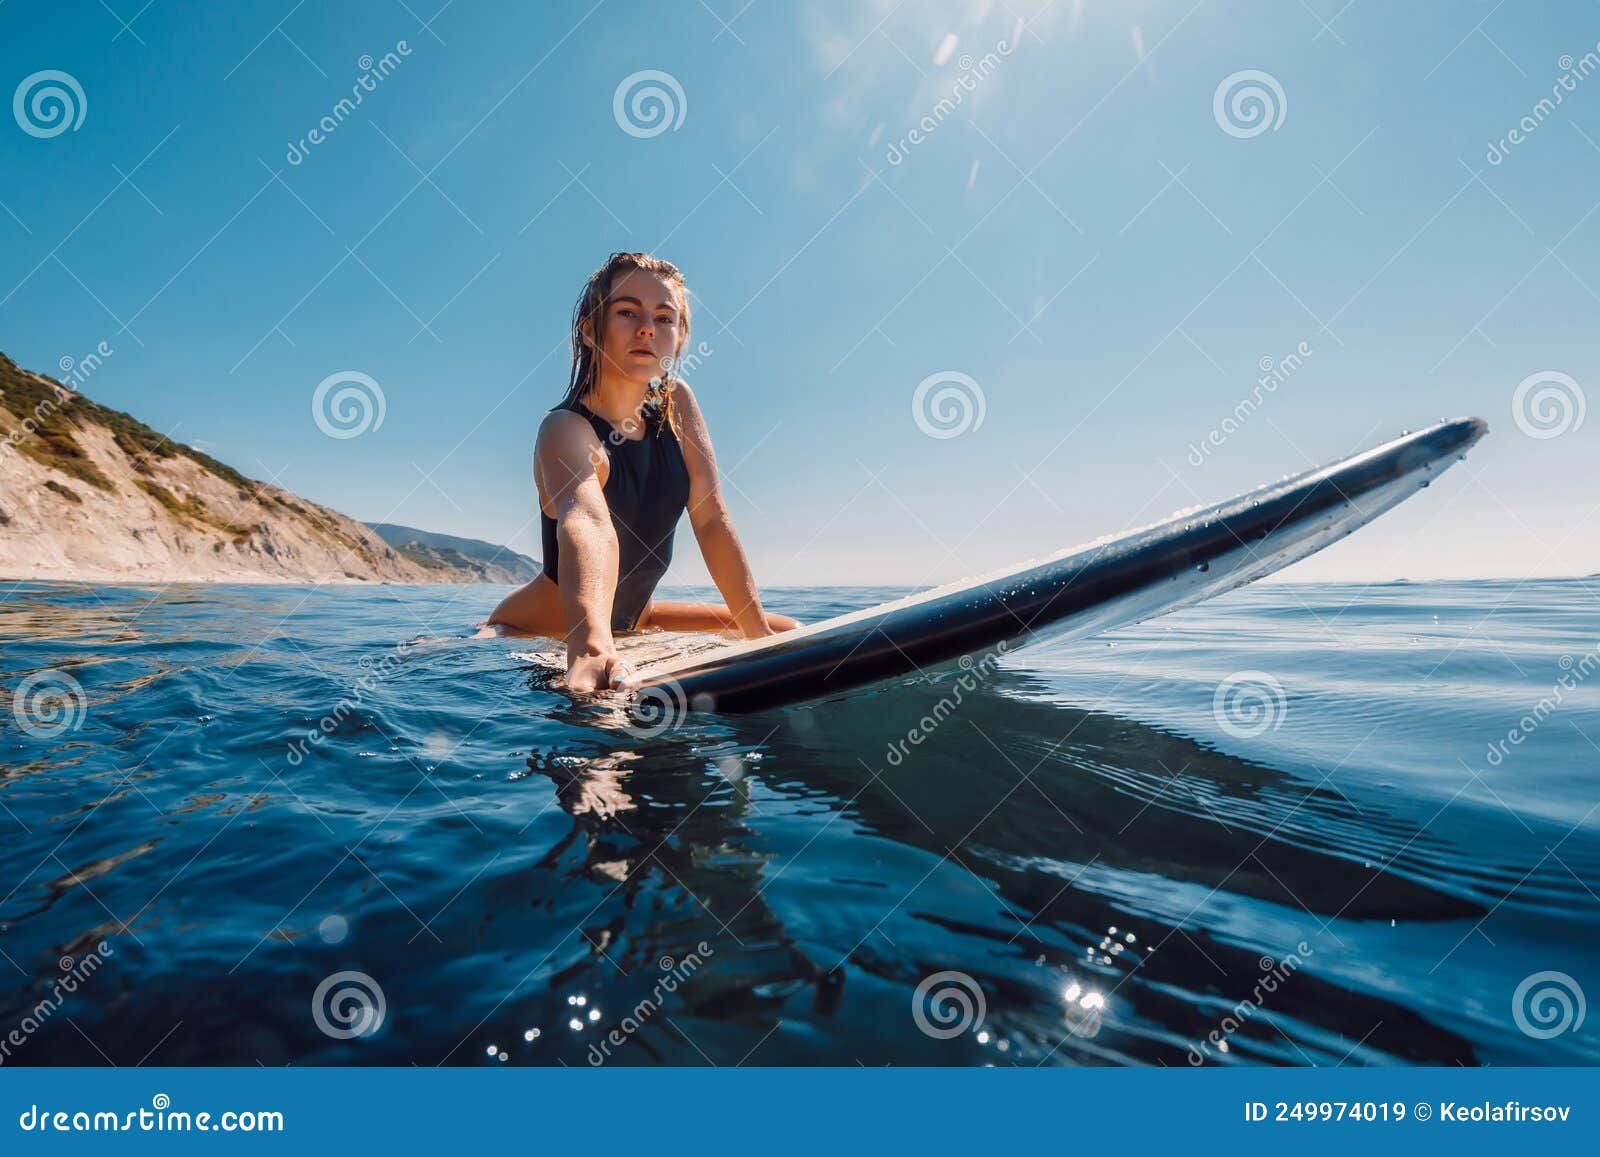 Soleado Con Atractiva Chica En Tablas De Surf En El Océano. Bella Joven Mujer Mira La Cámara Imagen de archivo - Imagen de belleza, atlético: 249974019